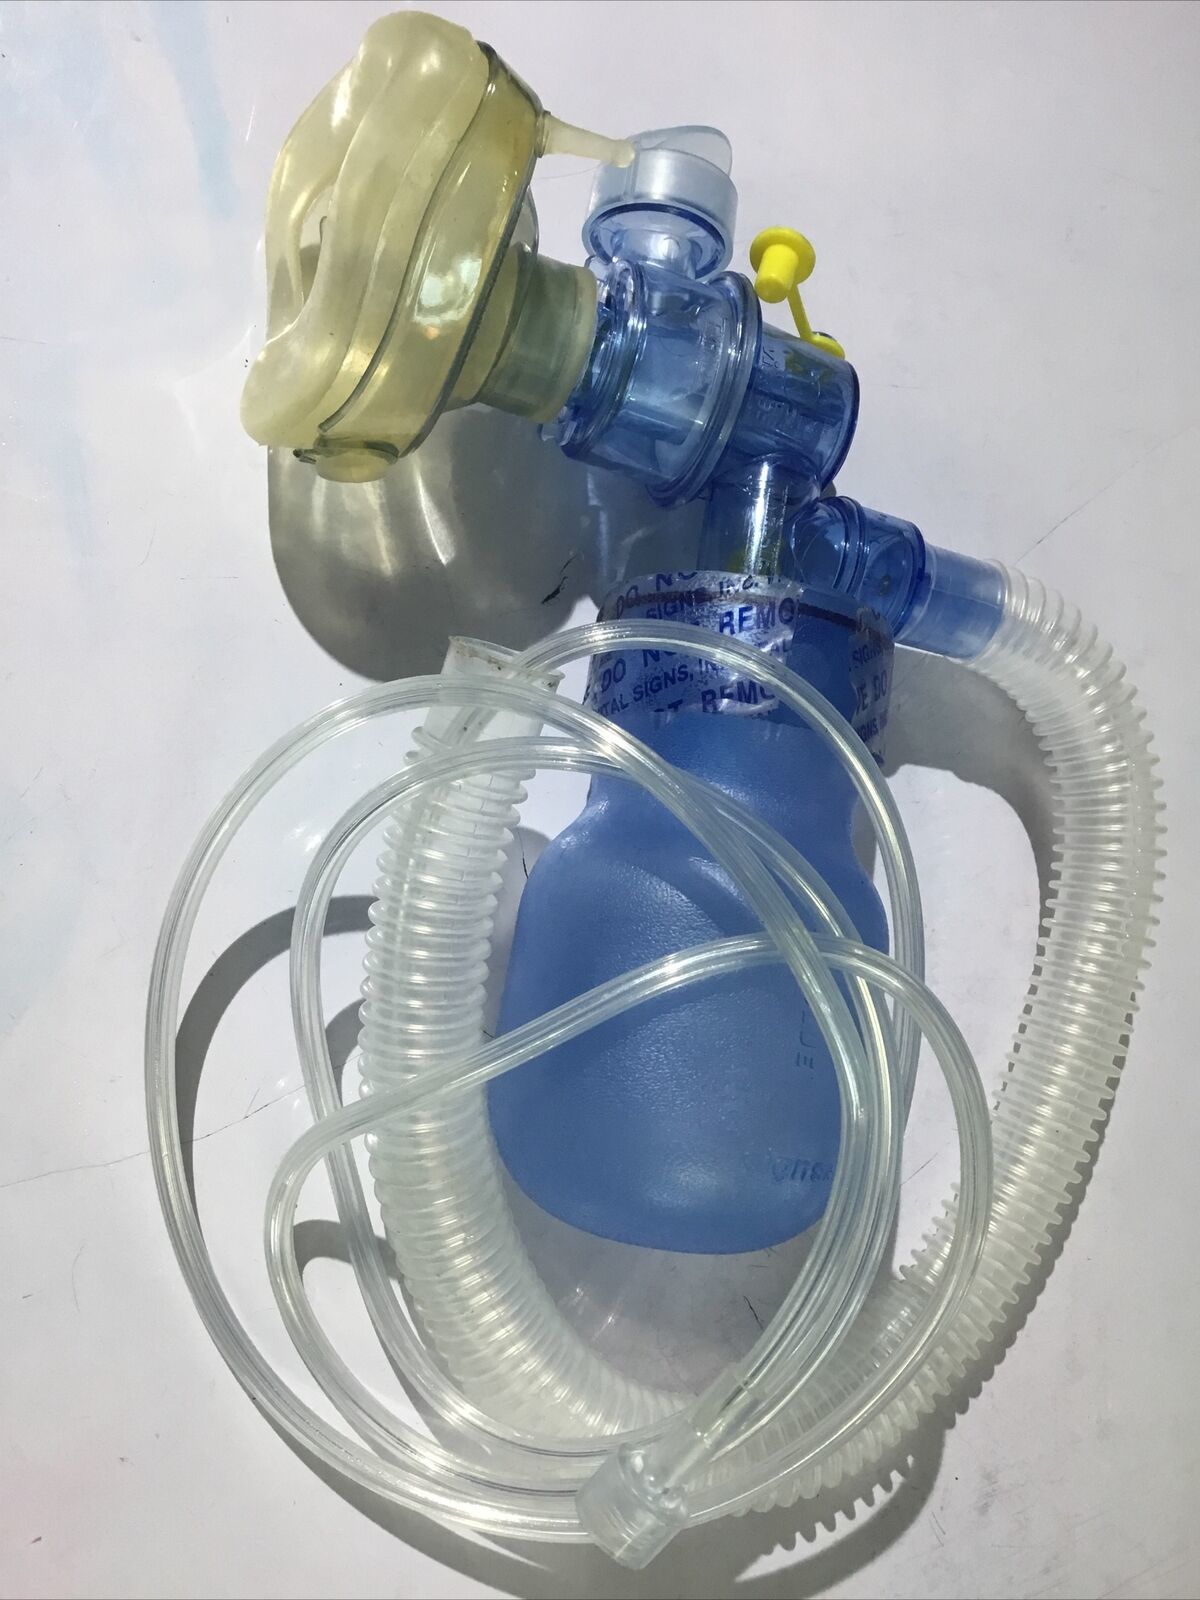 Laerdal Silicone Ambu Resuscitator Infant Aid Kit Oxygen Baby Blue Hospital - $68.31